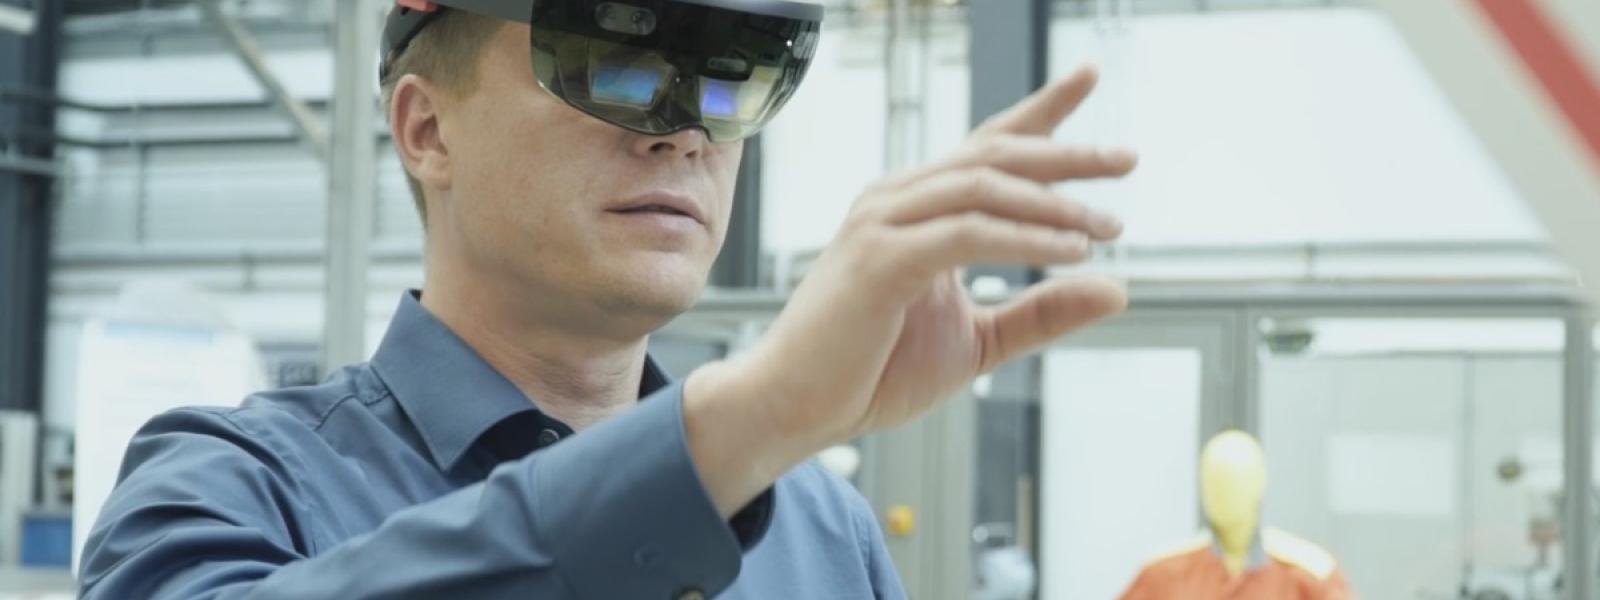 Eine Person mit aufgesetzter Augmented Reality Brille steht in einer Industriehalle und hält einen Arm ausgestreckt vor dem Körper